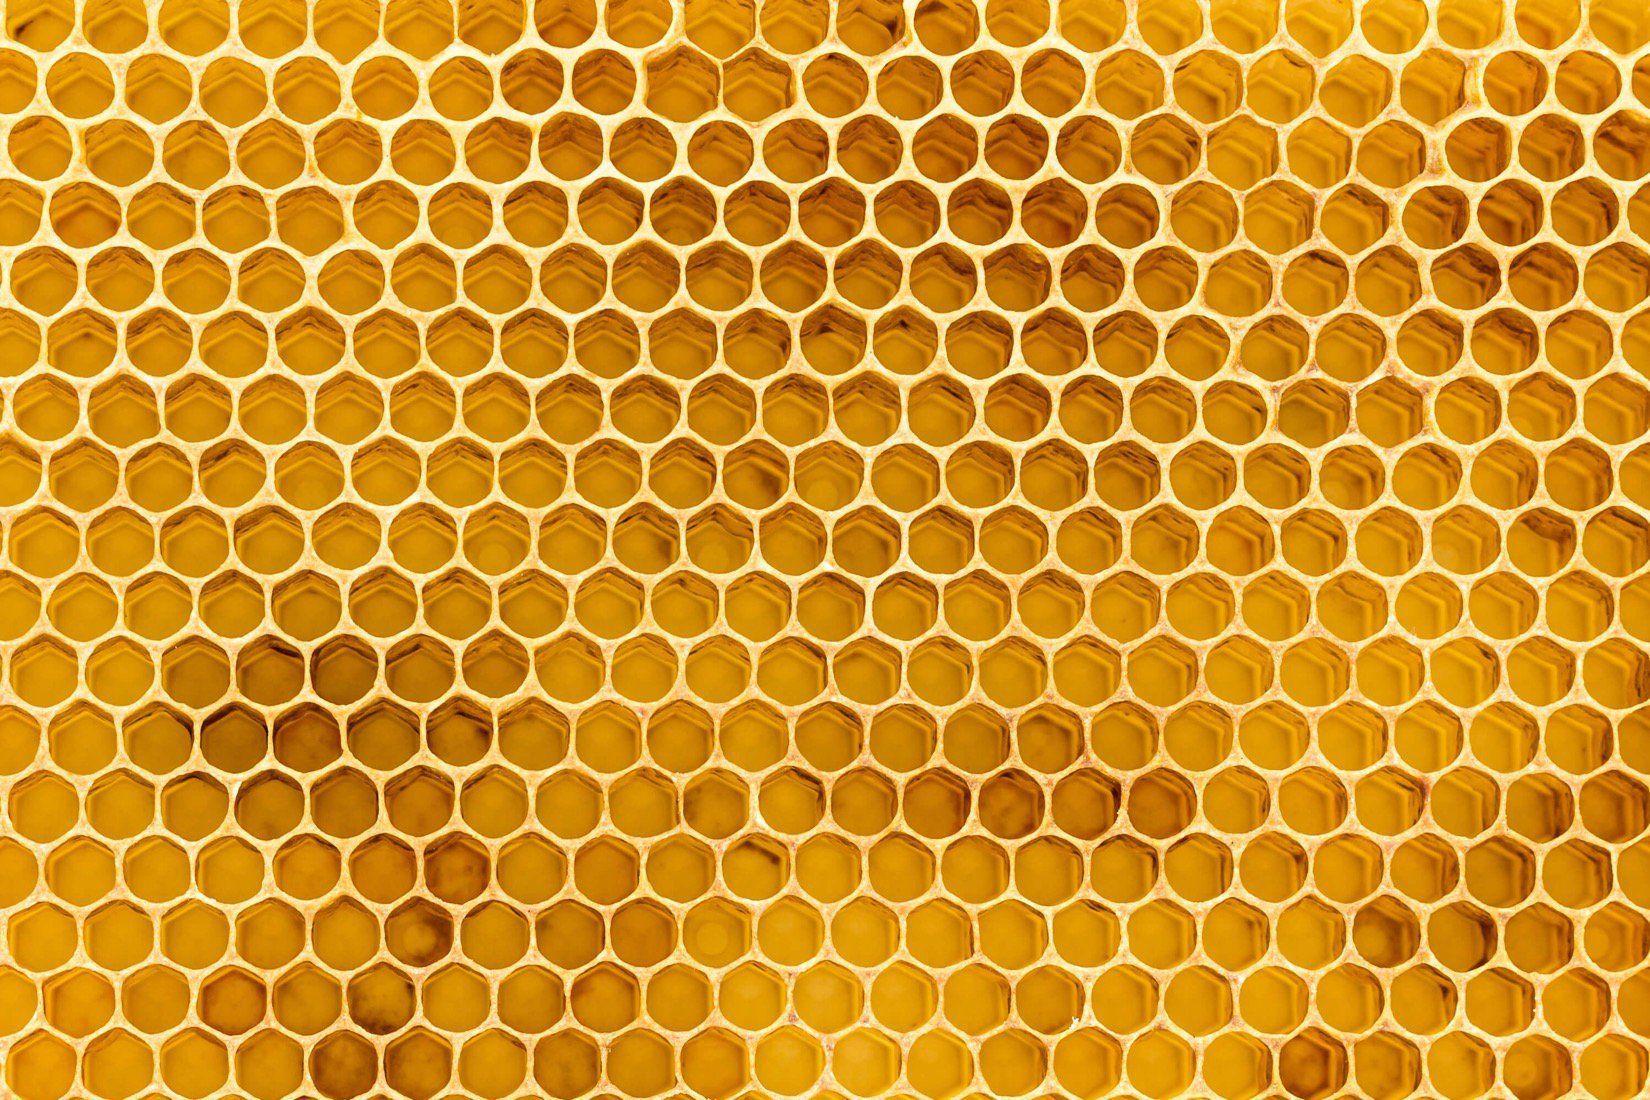 3D Honeycomb Pattern Wallpaper